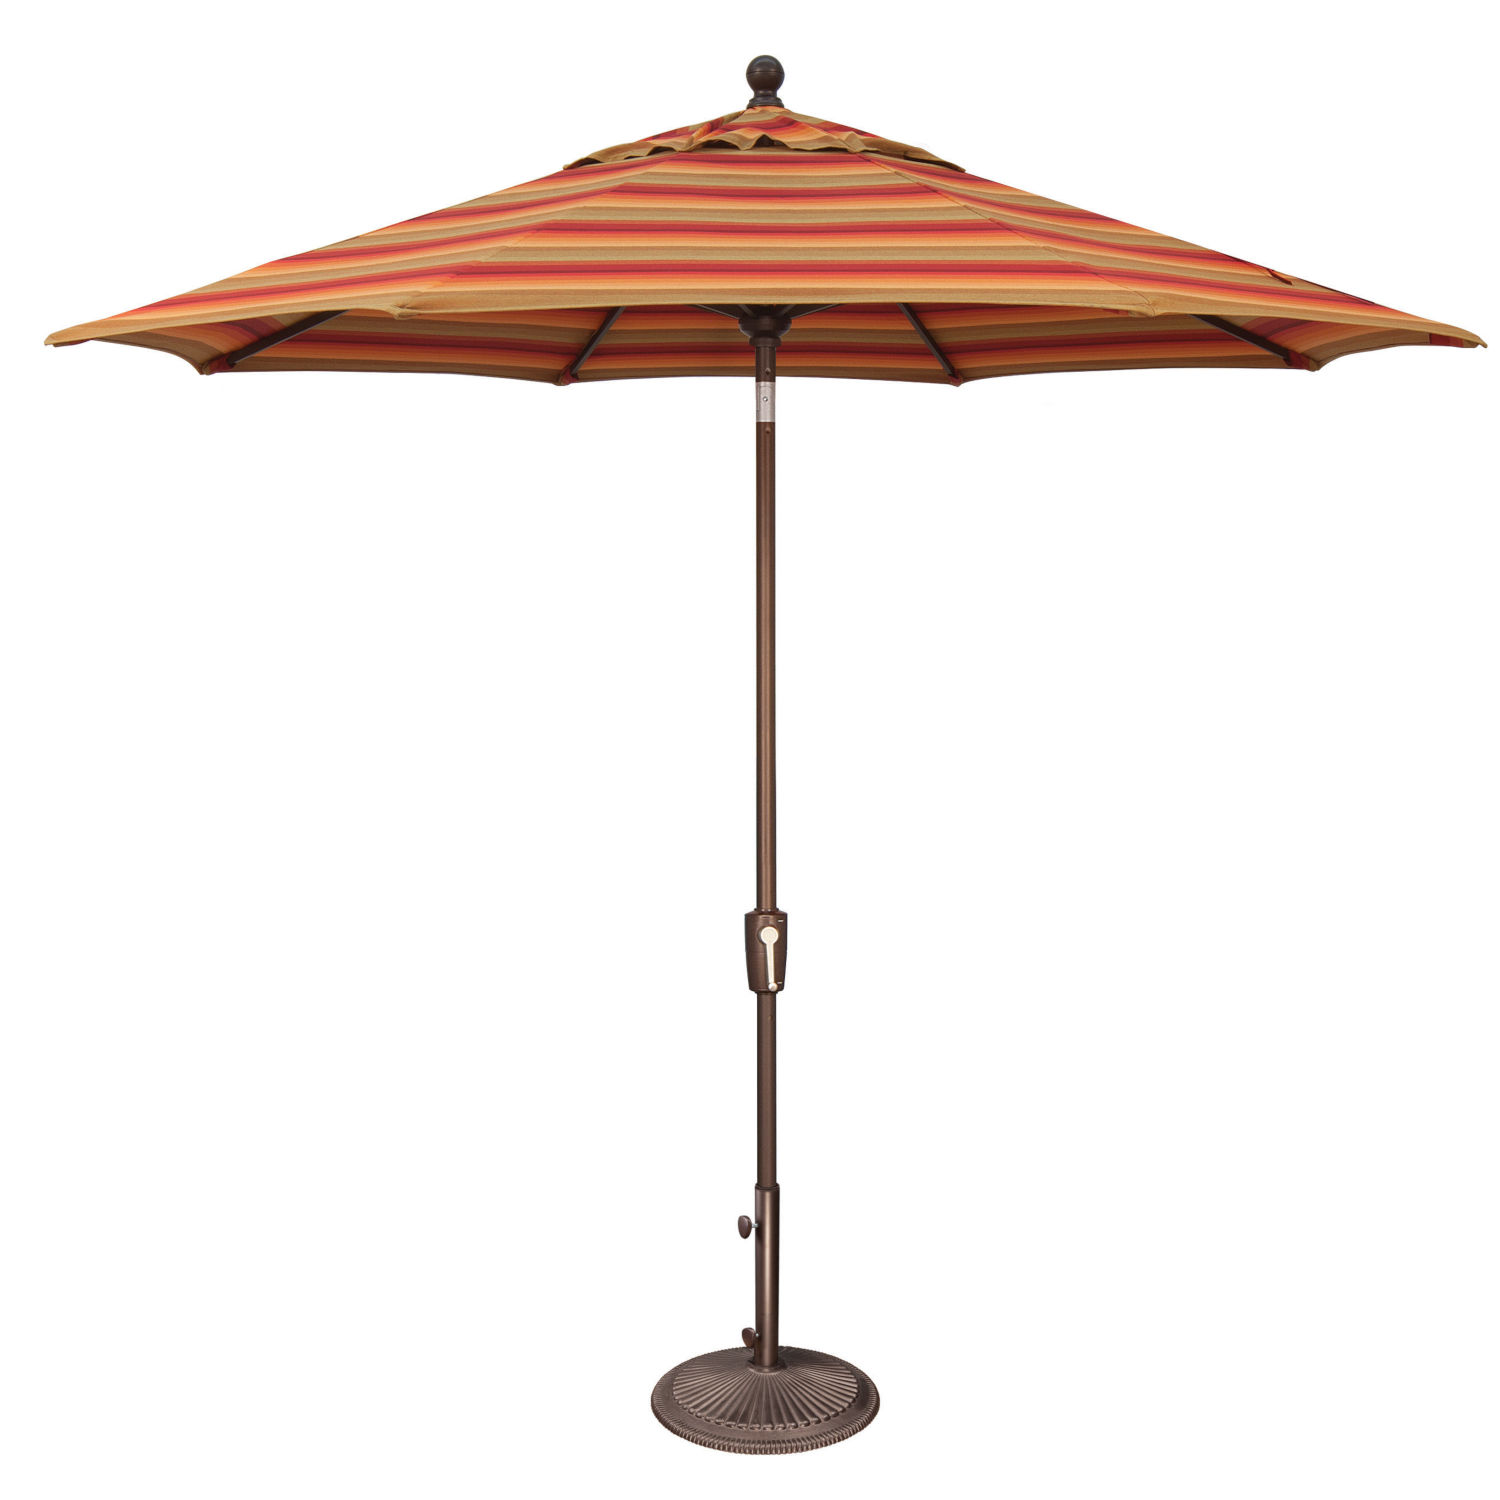 Patio Umbrellas & Awnings Category